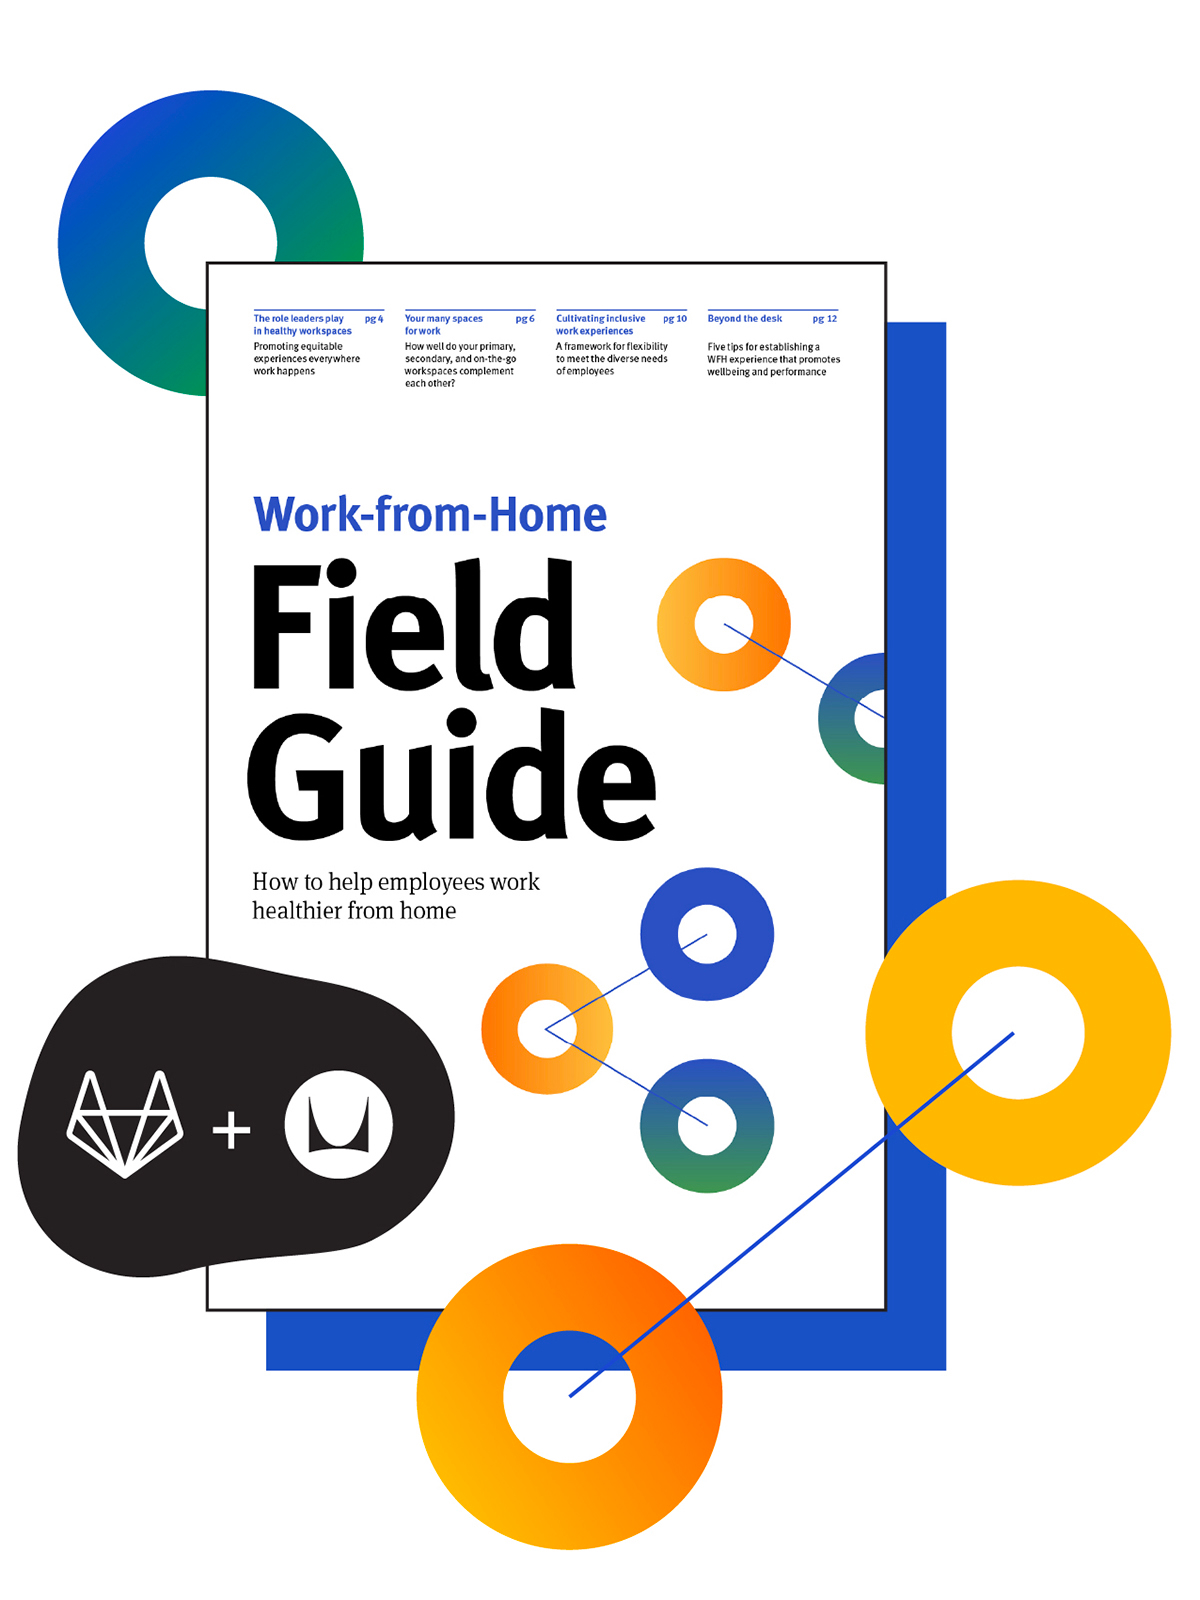 Portada de la guía de campo Work-from-Home (trabajar desde casa), una colaboración entre los expertos en trabajo remoto de GitLab y Herman Miller.